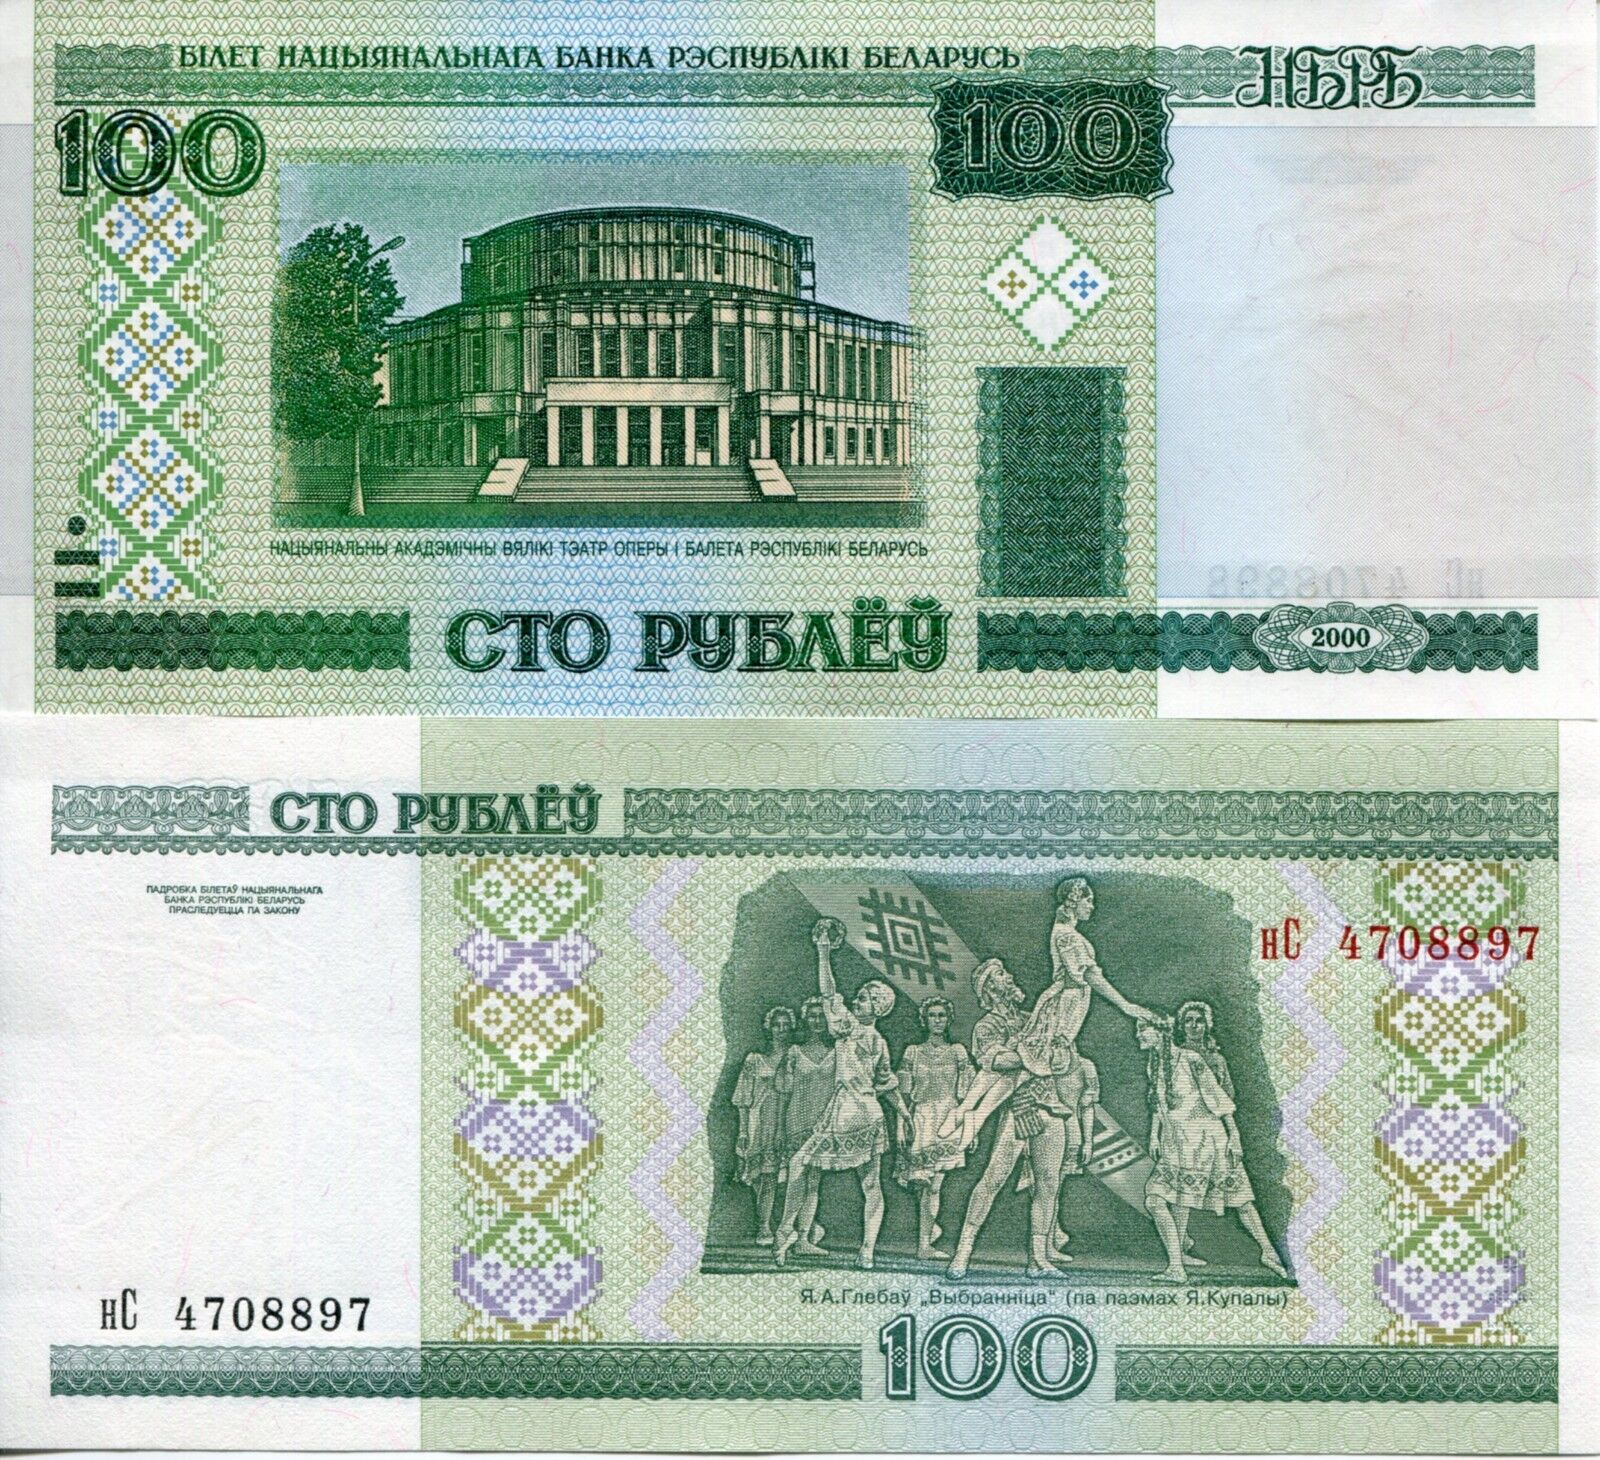 Banknote Belarus Belarusan 100 Ruble 2000 Opera Ballet Theater Minsk UNC mint